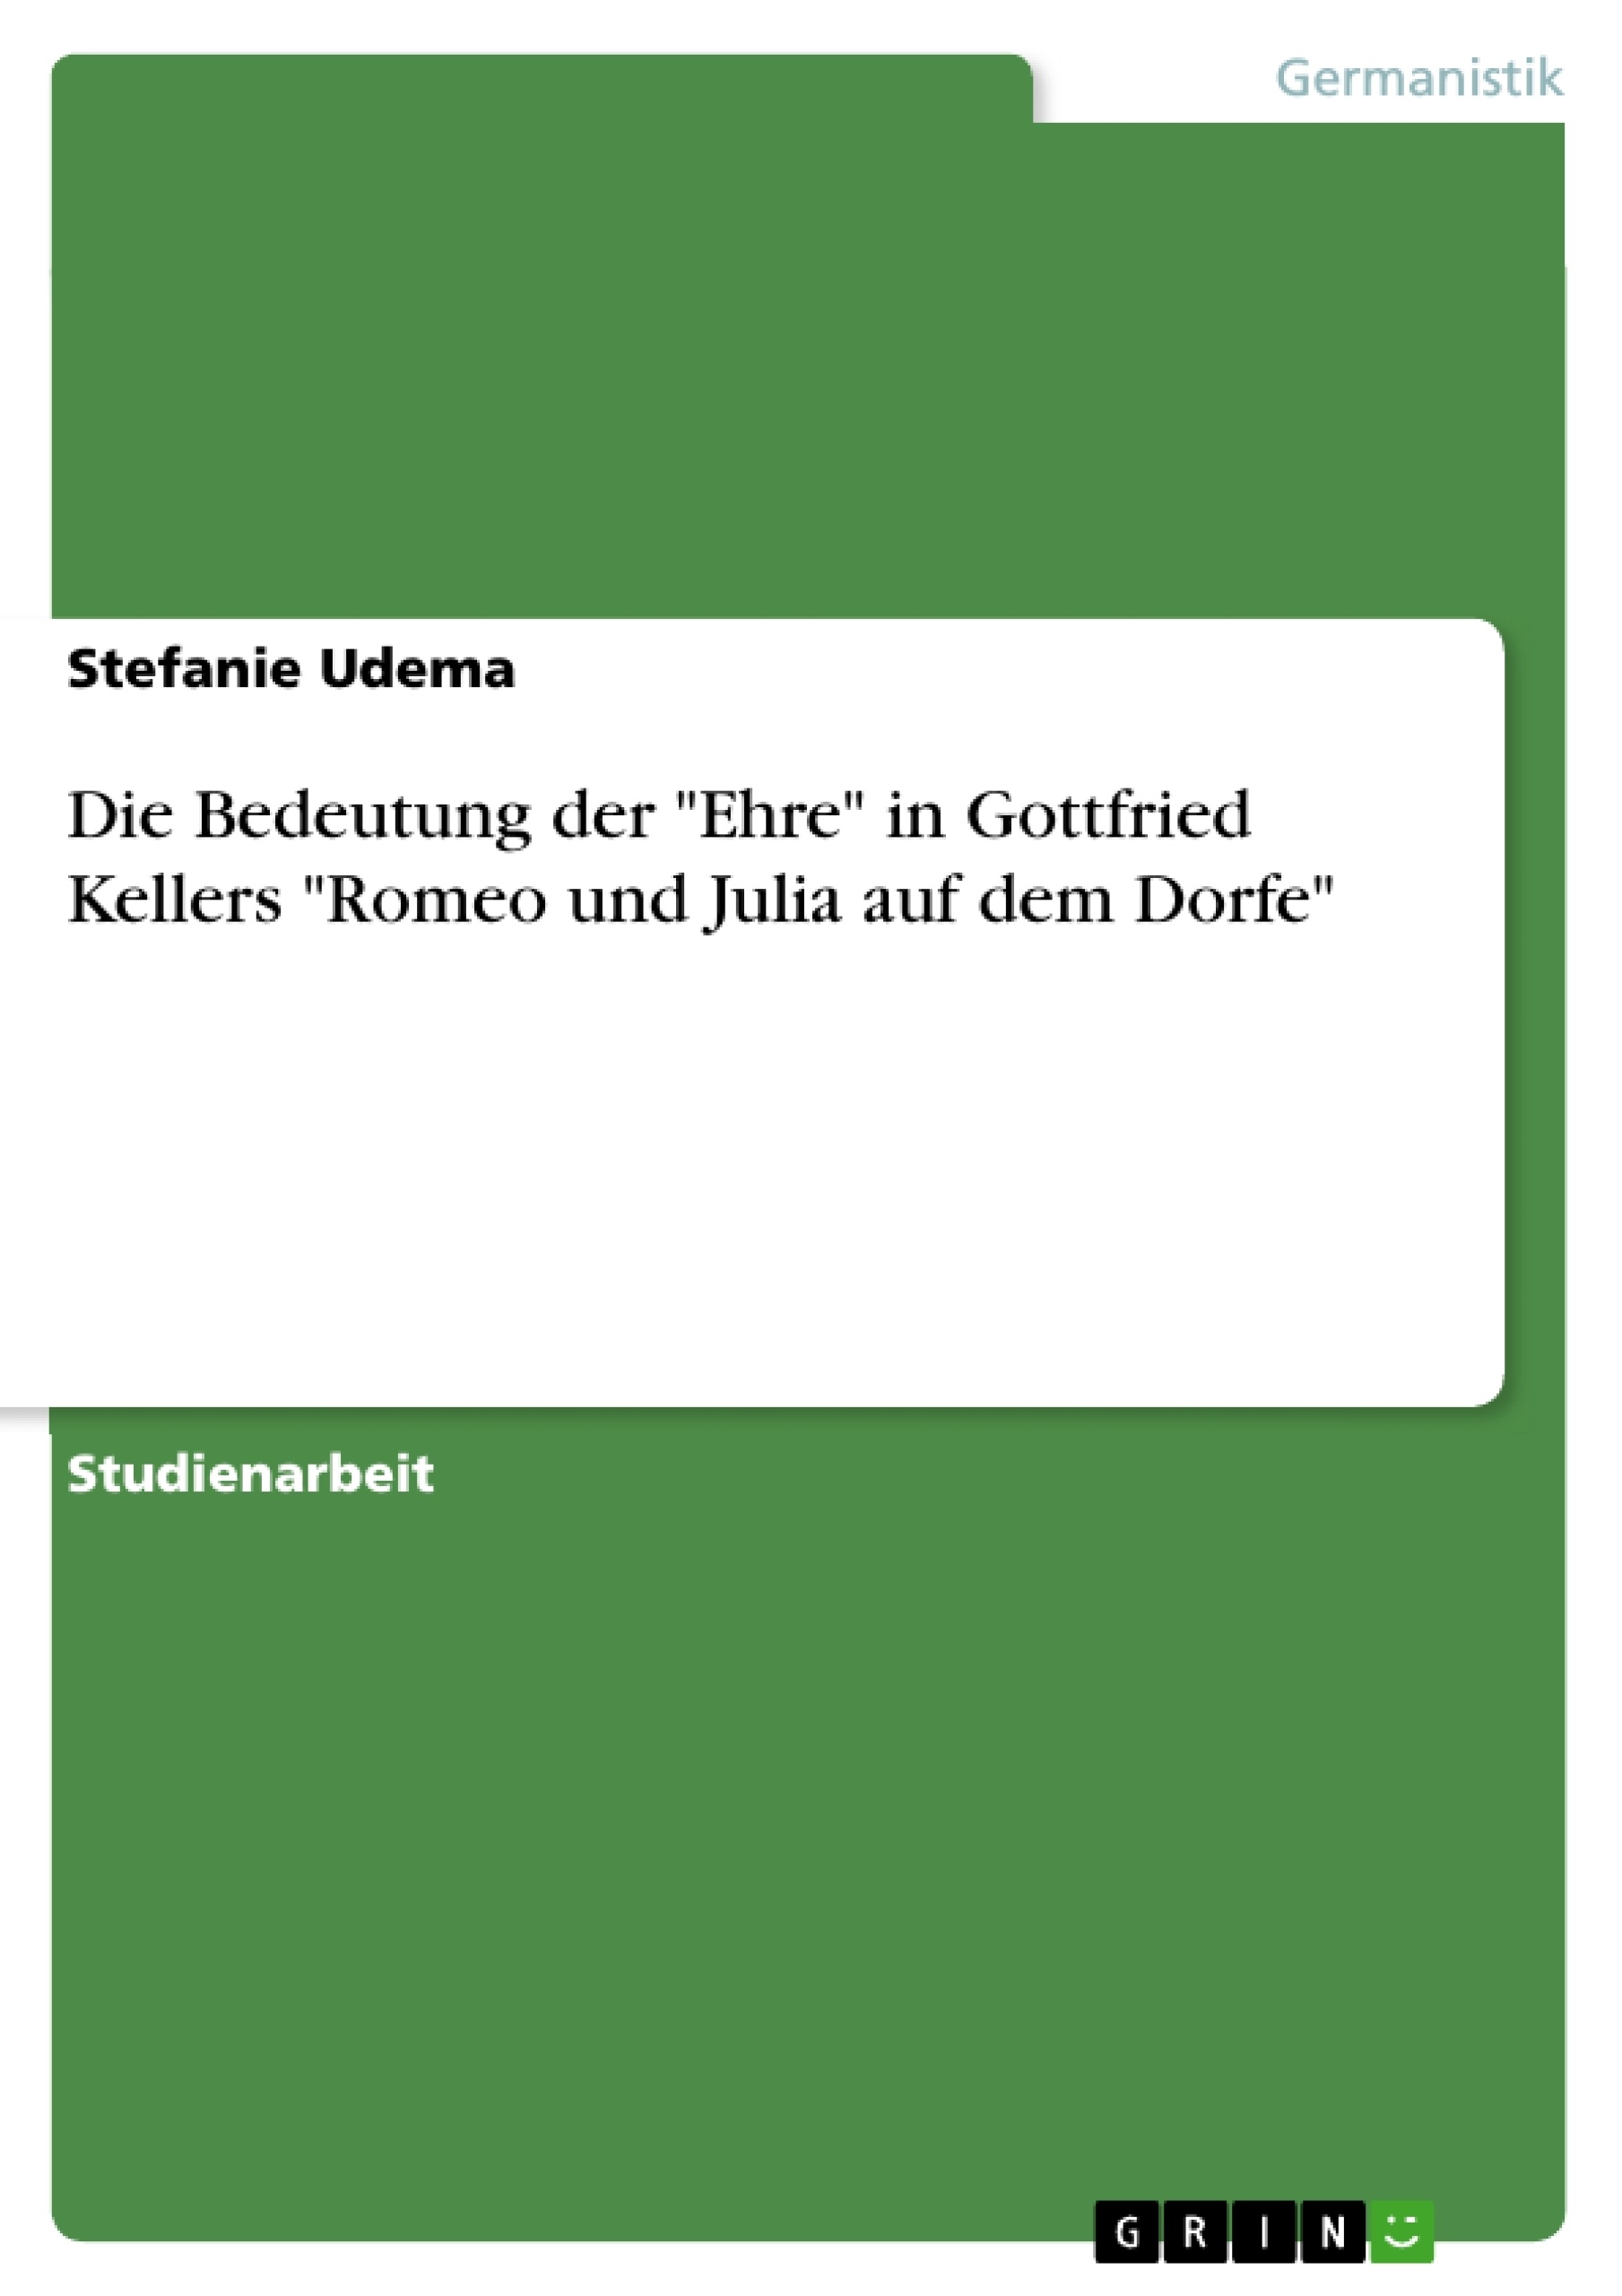 Title: Die Bedeutung der "Ehre" in Gottfried Kellers "Romeo und Julia auf dem Dorfe"